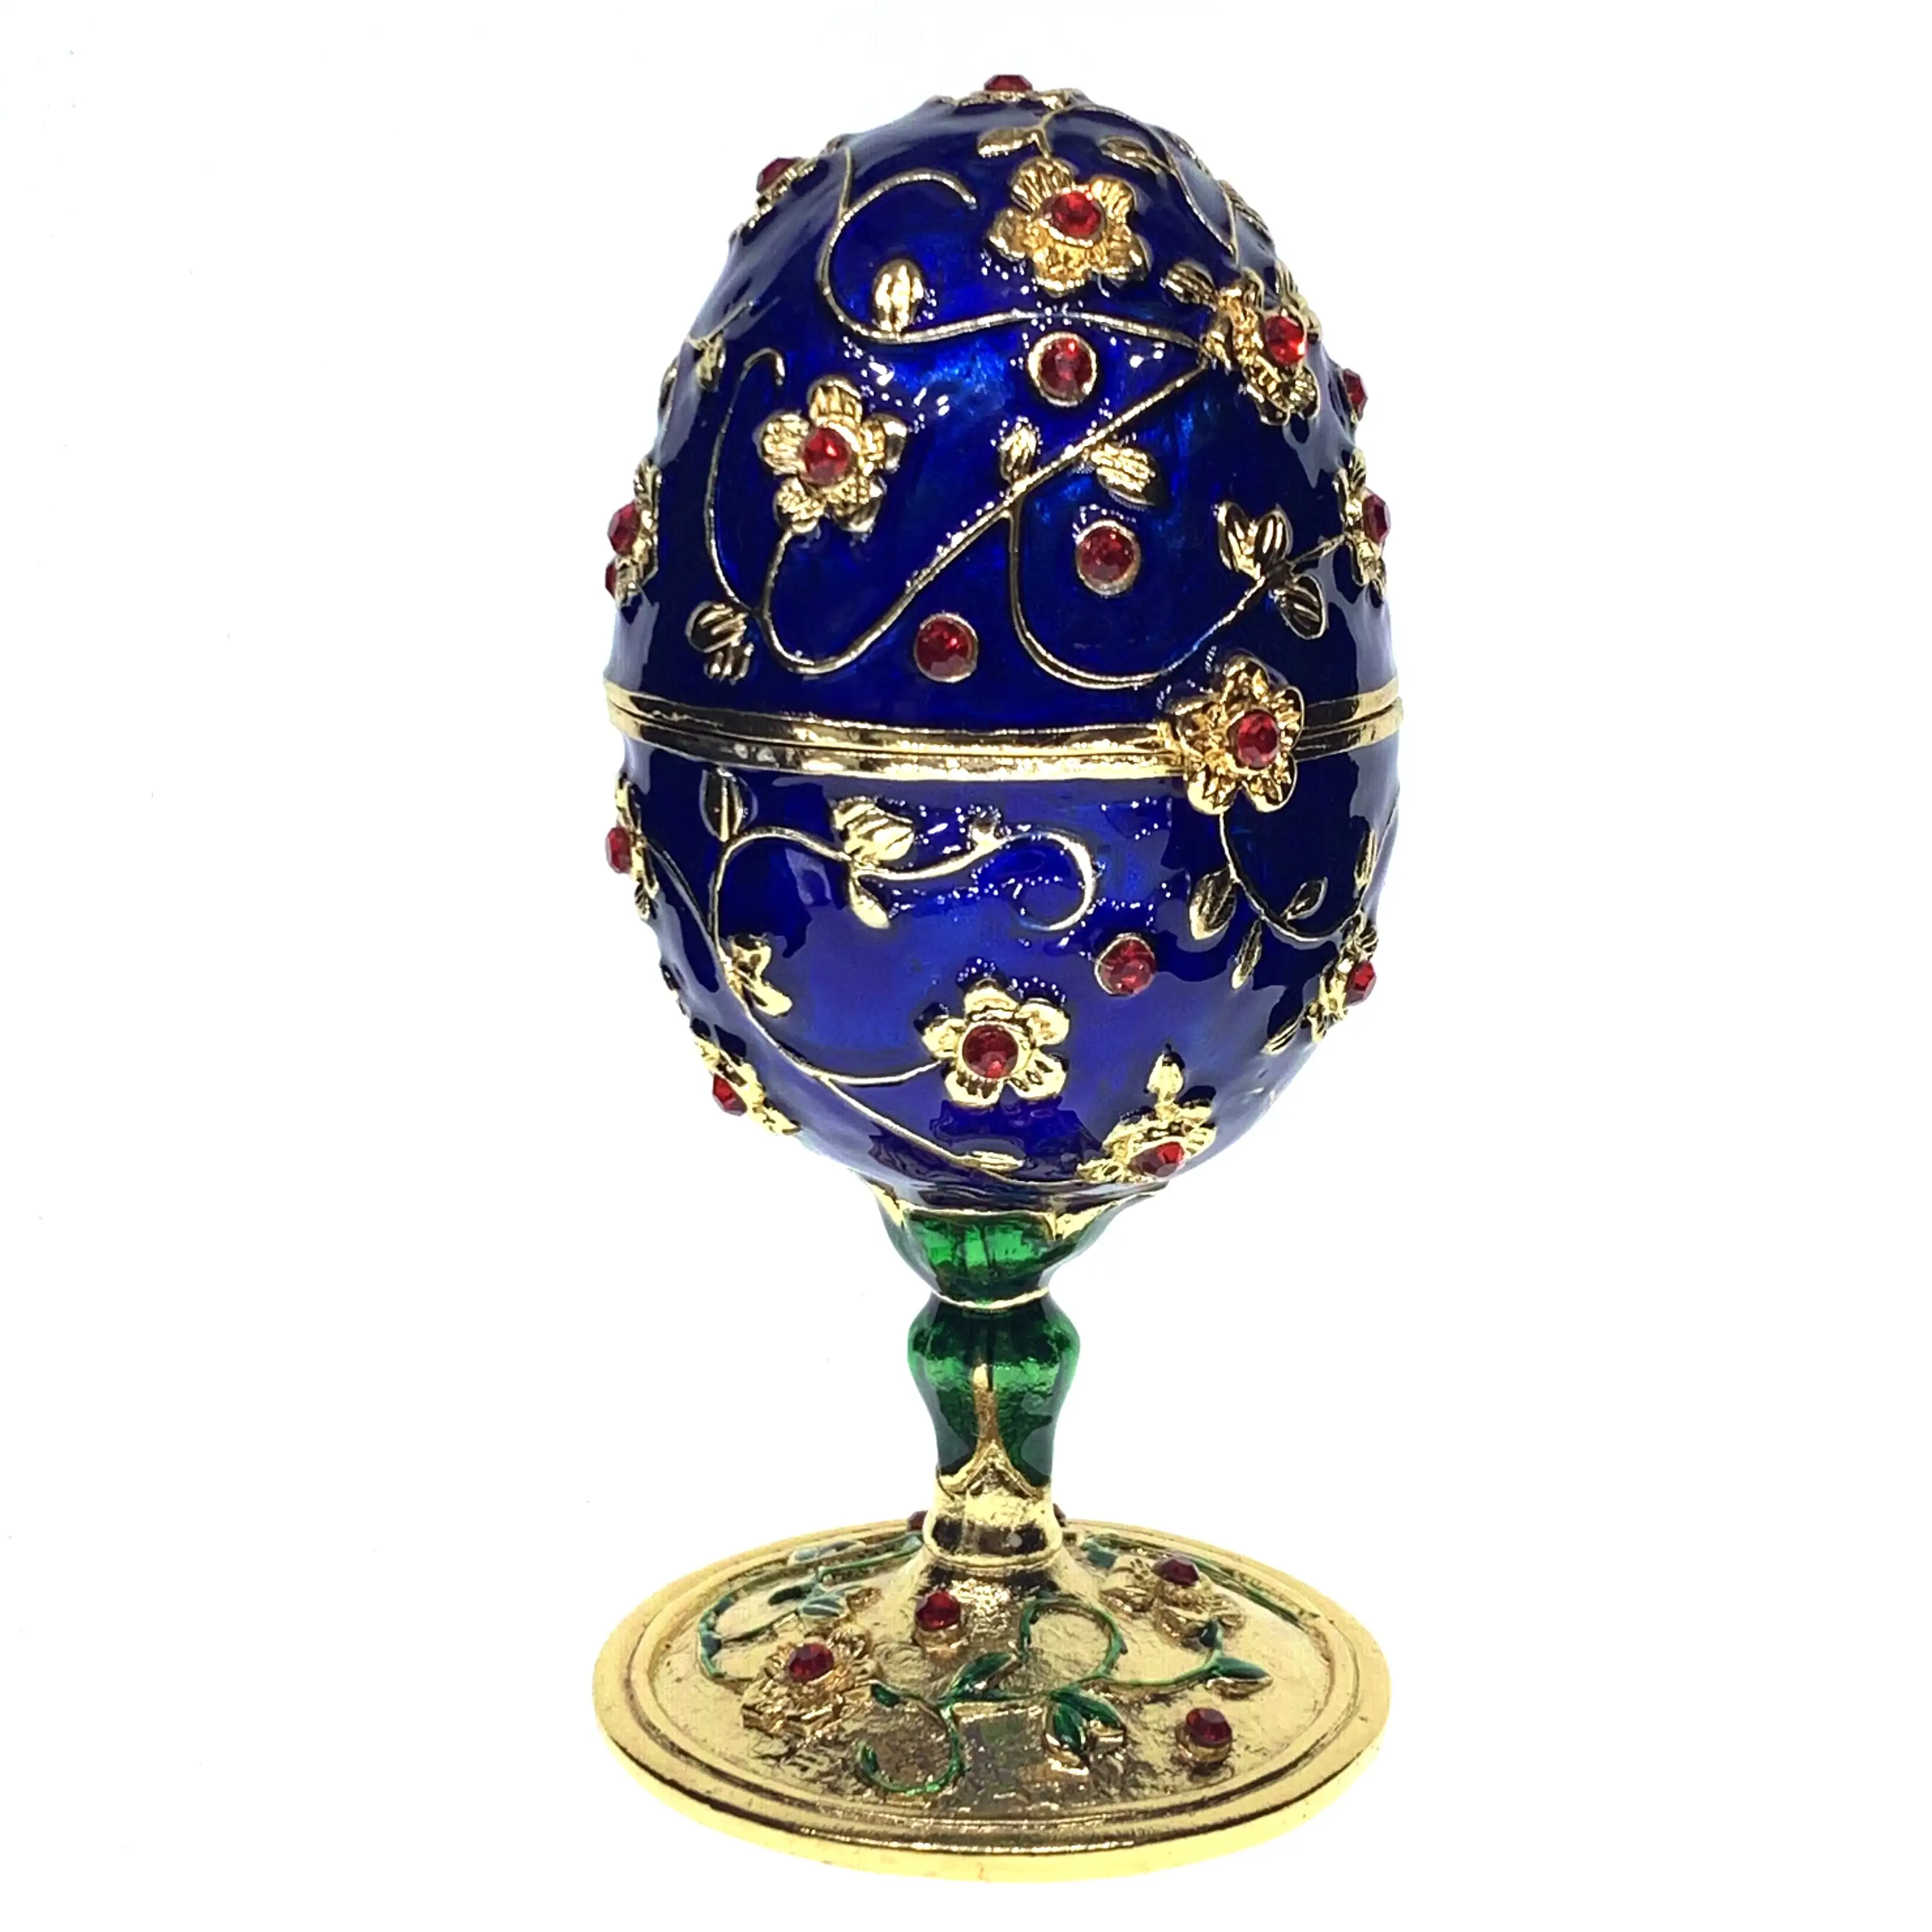 QIFU faberge caja de joyería estilo huevo para Regalos de Pascua